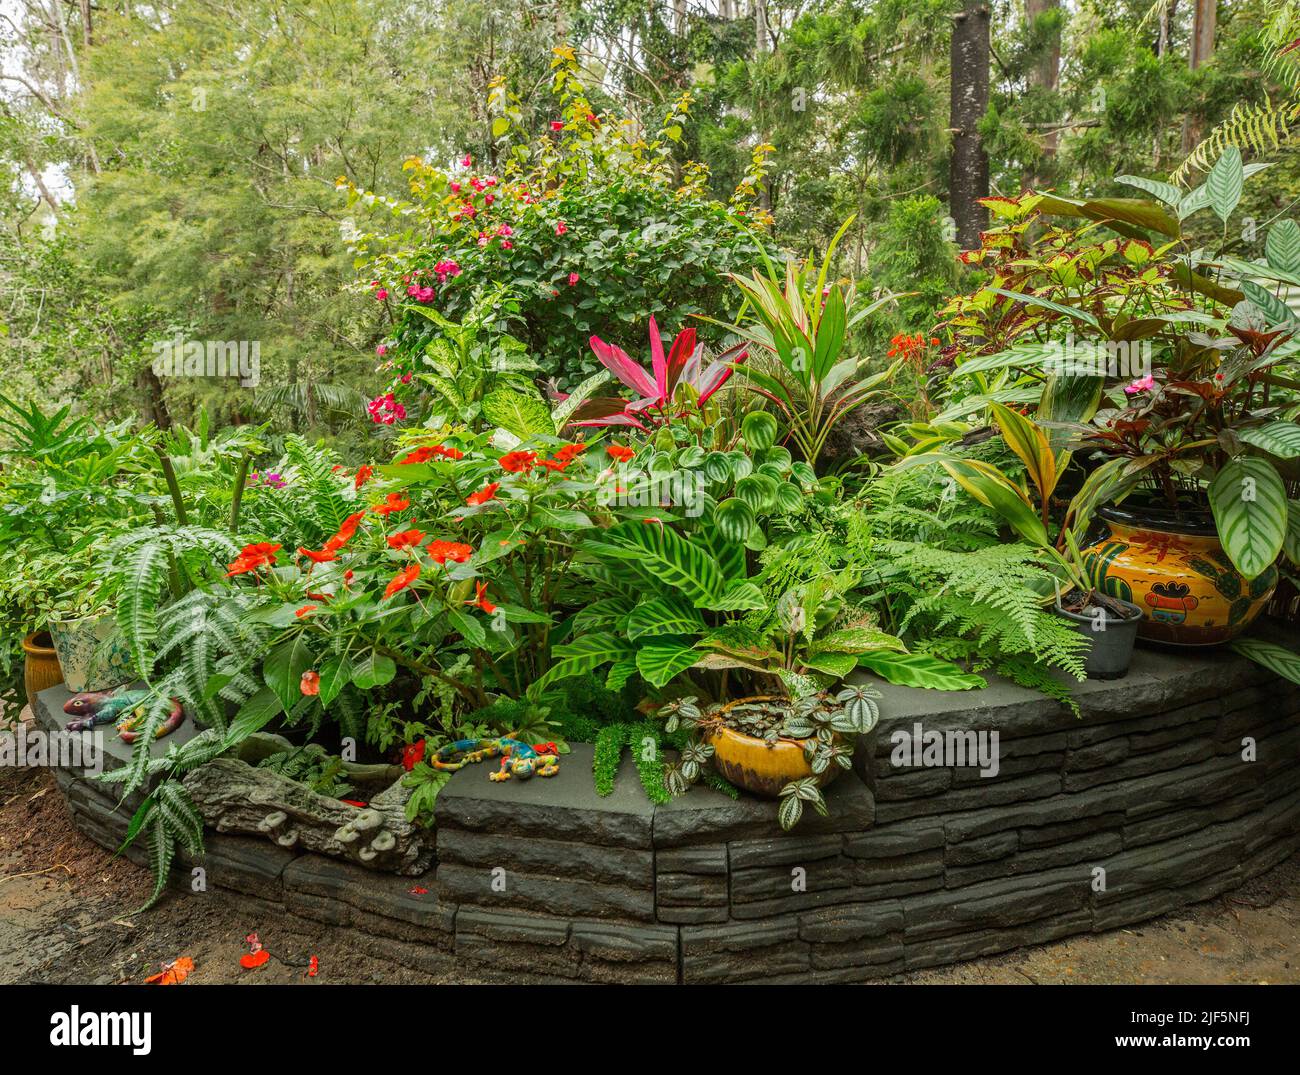 Jardin coloré avec une masse de fougères luxuriantes, de fooliage et de plantes à fleurs, tous croissant dans des récipients qui sont dissimulés par la paroi basse décorative, Australie Banque D'Images